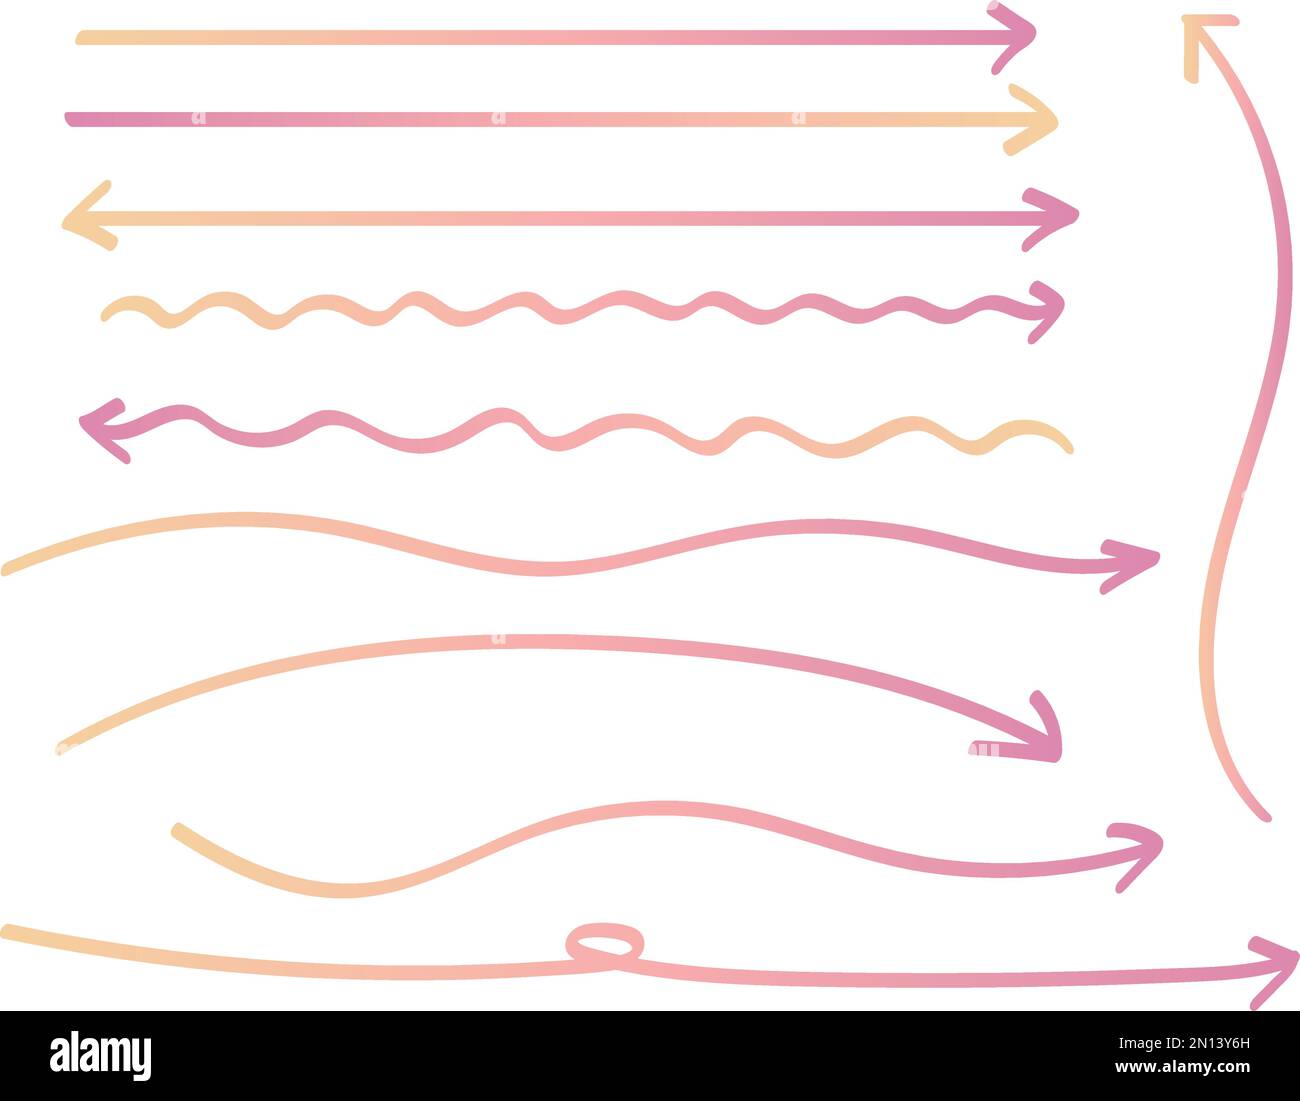 Set di frecce lunghe disegnate a mano con gradiente rosa e giallo. Frecce che si attorcigliano o frecce leggermente curve e diritte. Illustrazione Vettoriale